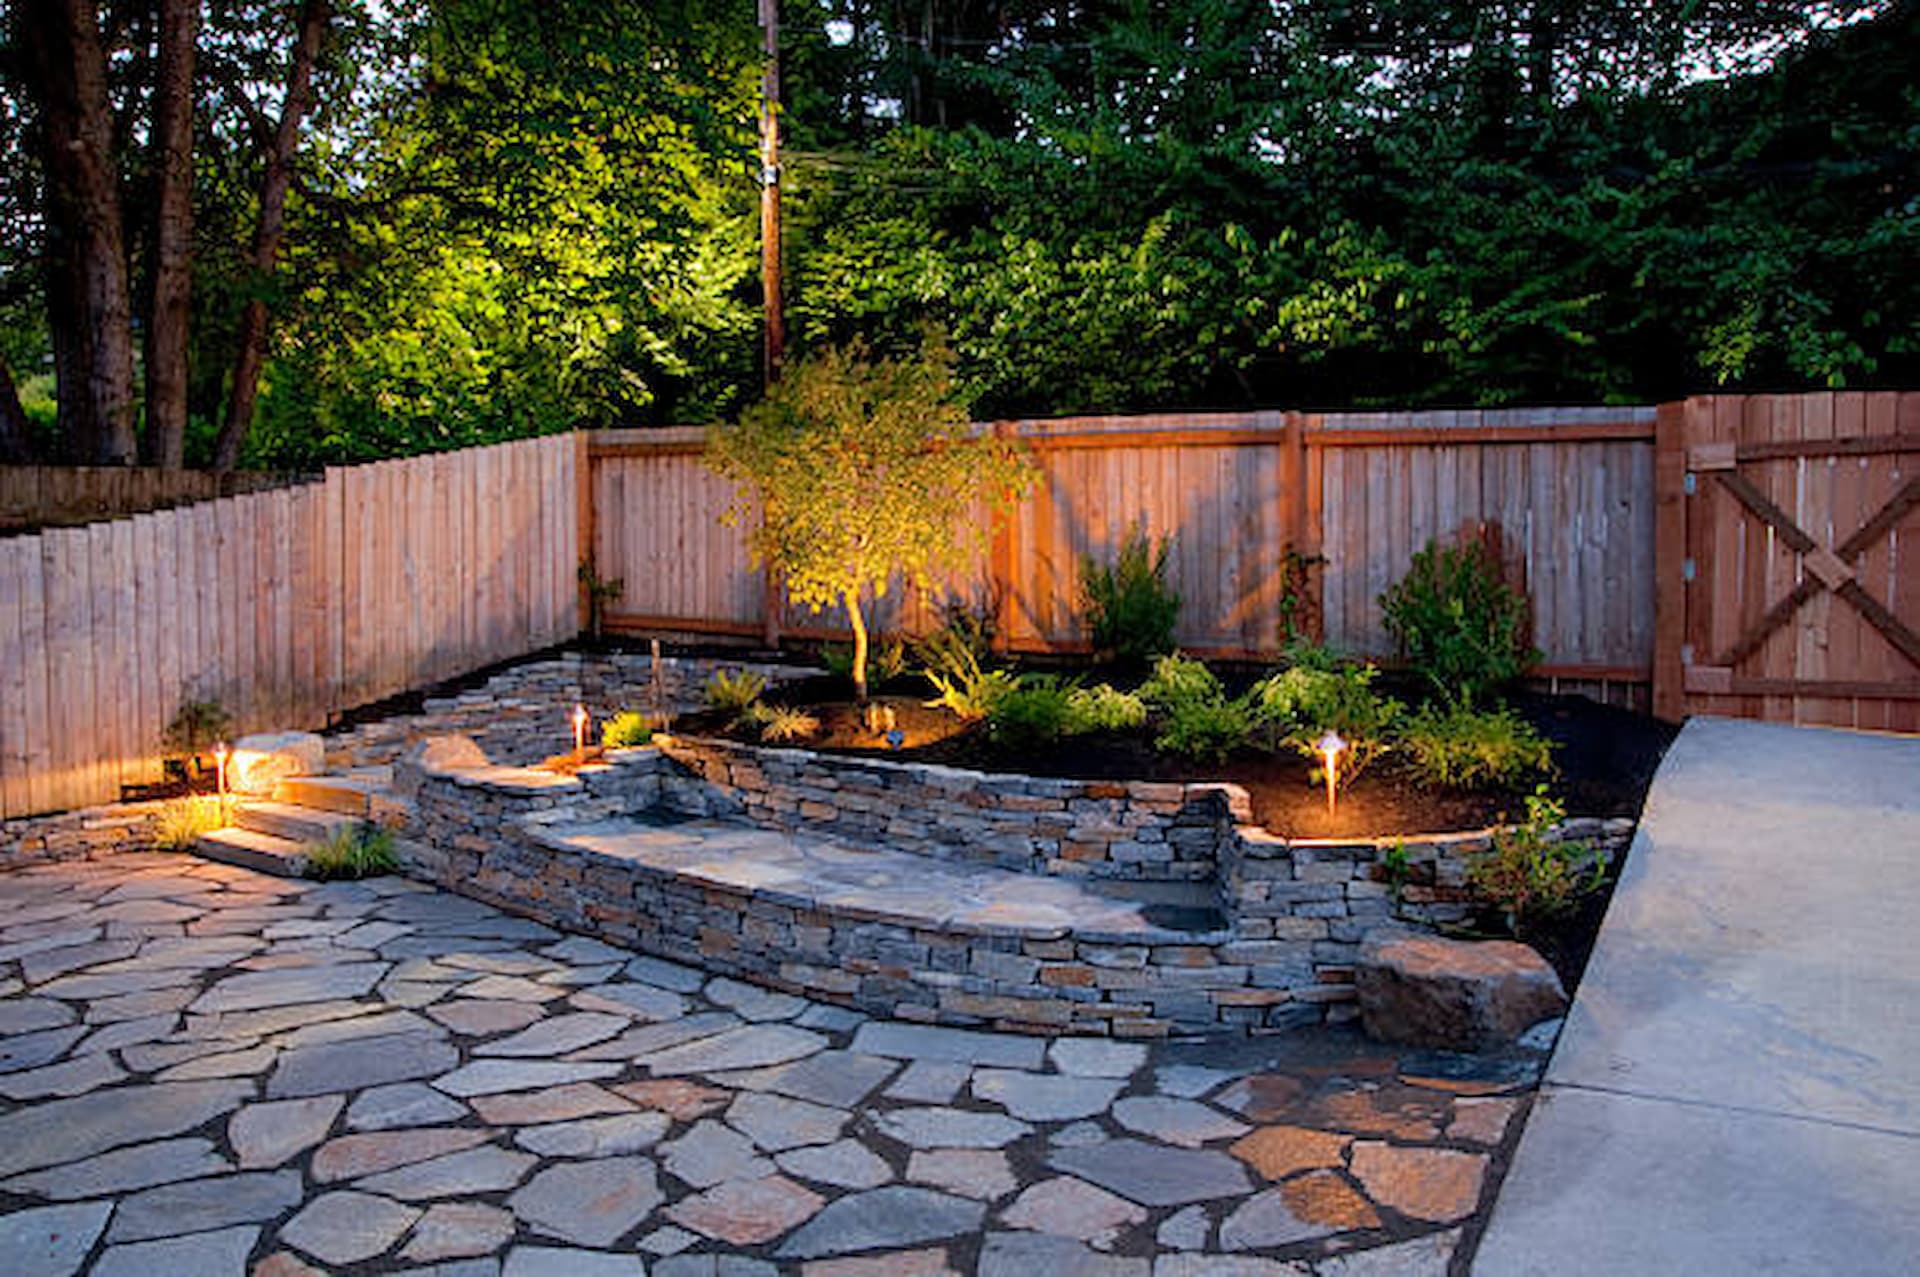 Enhancing Property Value through Beautiful Garden Design